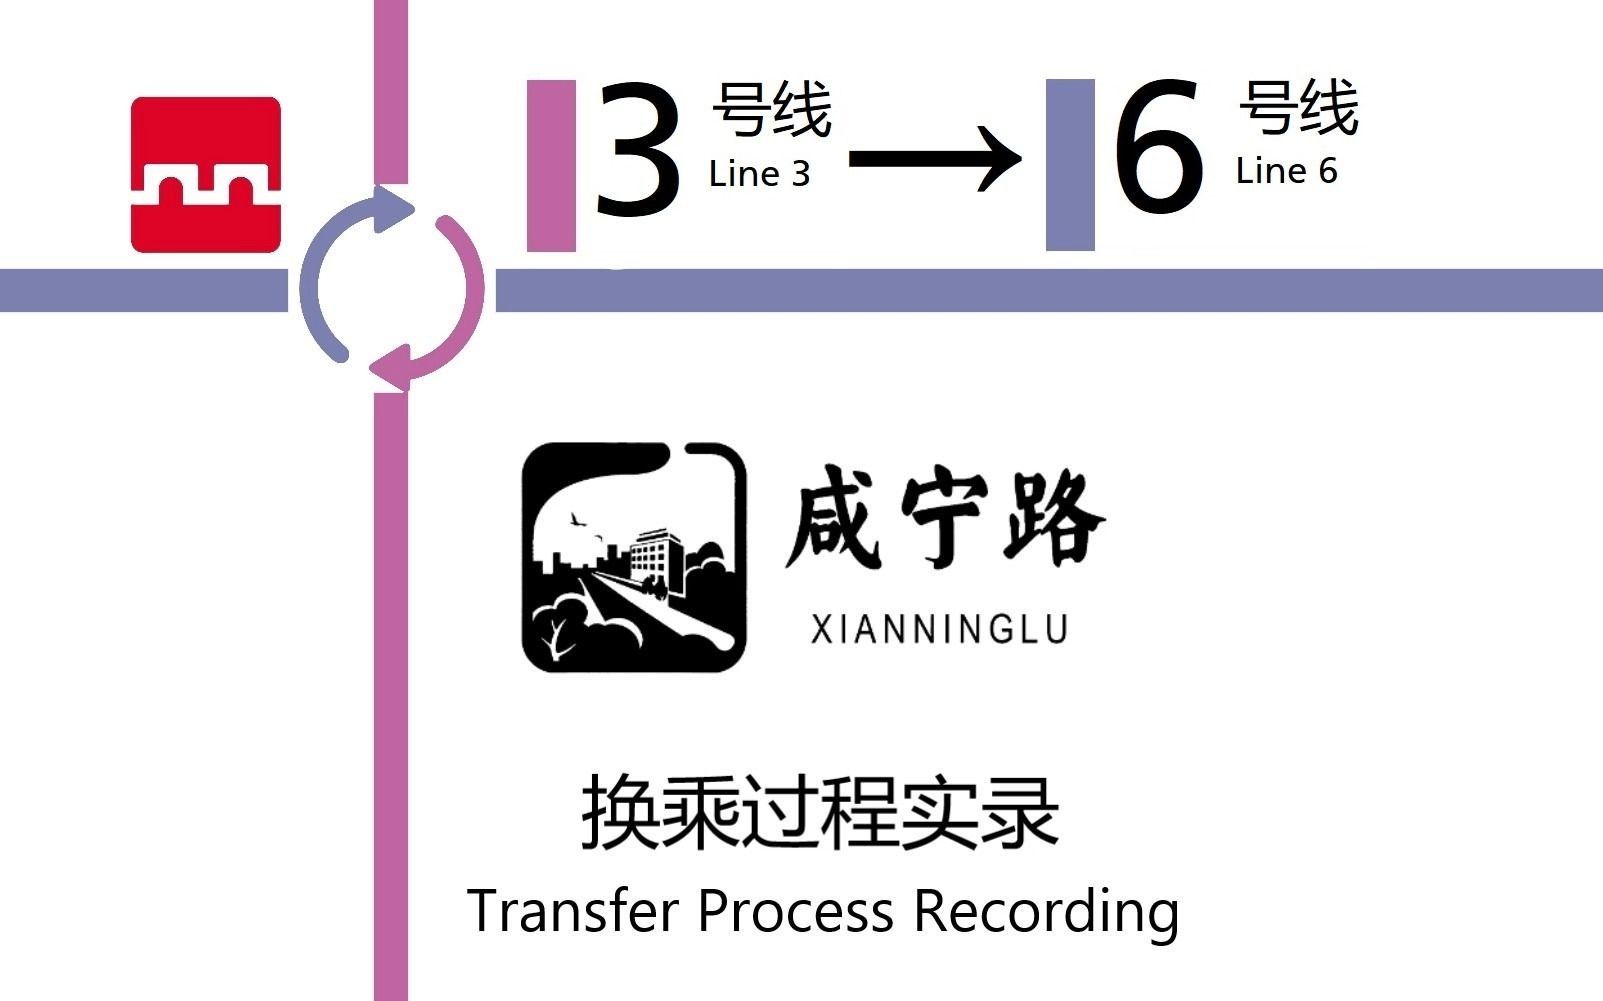 【西安地铁】咸宁路站 3号线—6号线 节点换乘过程实录